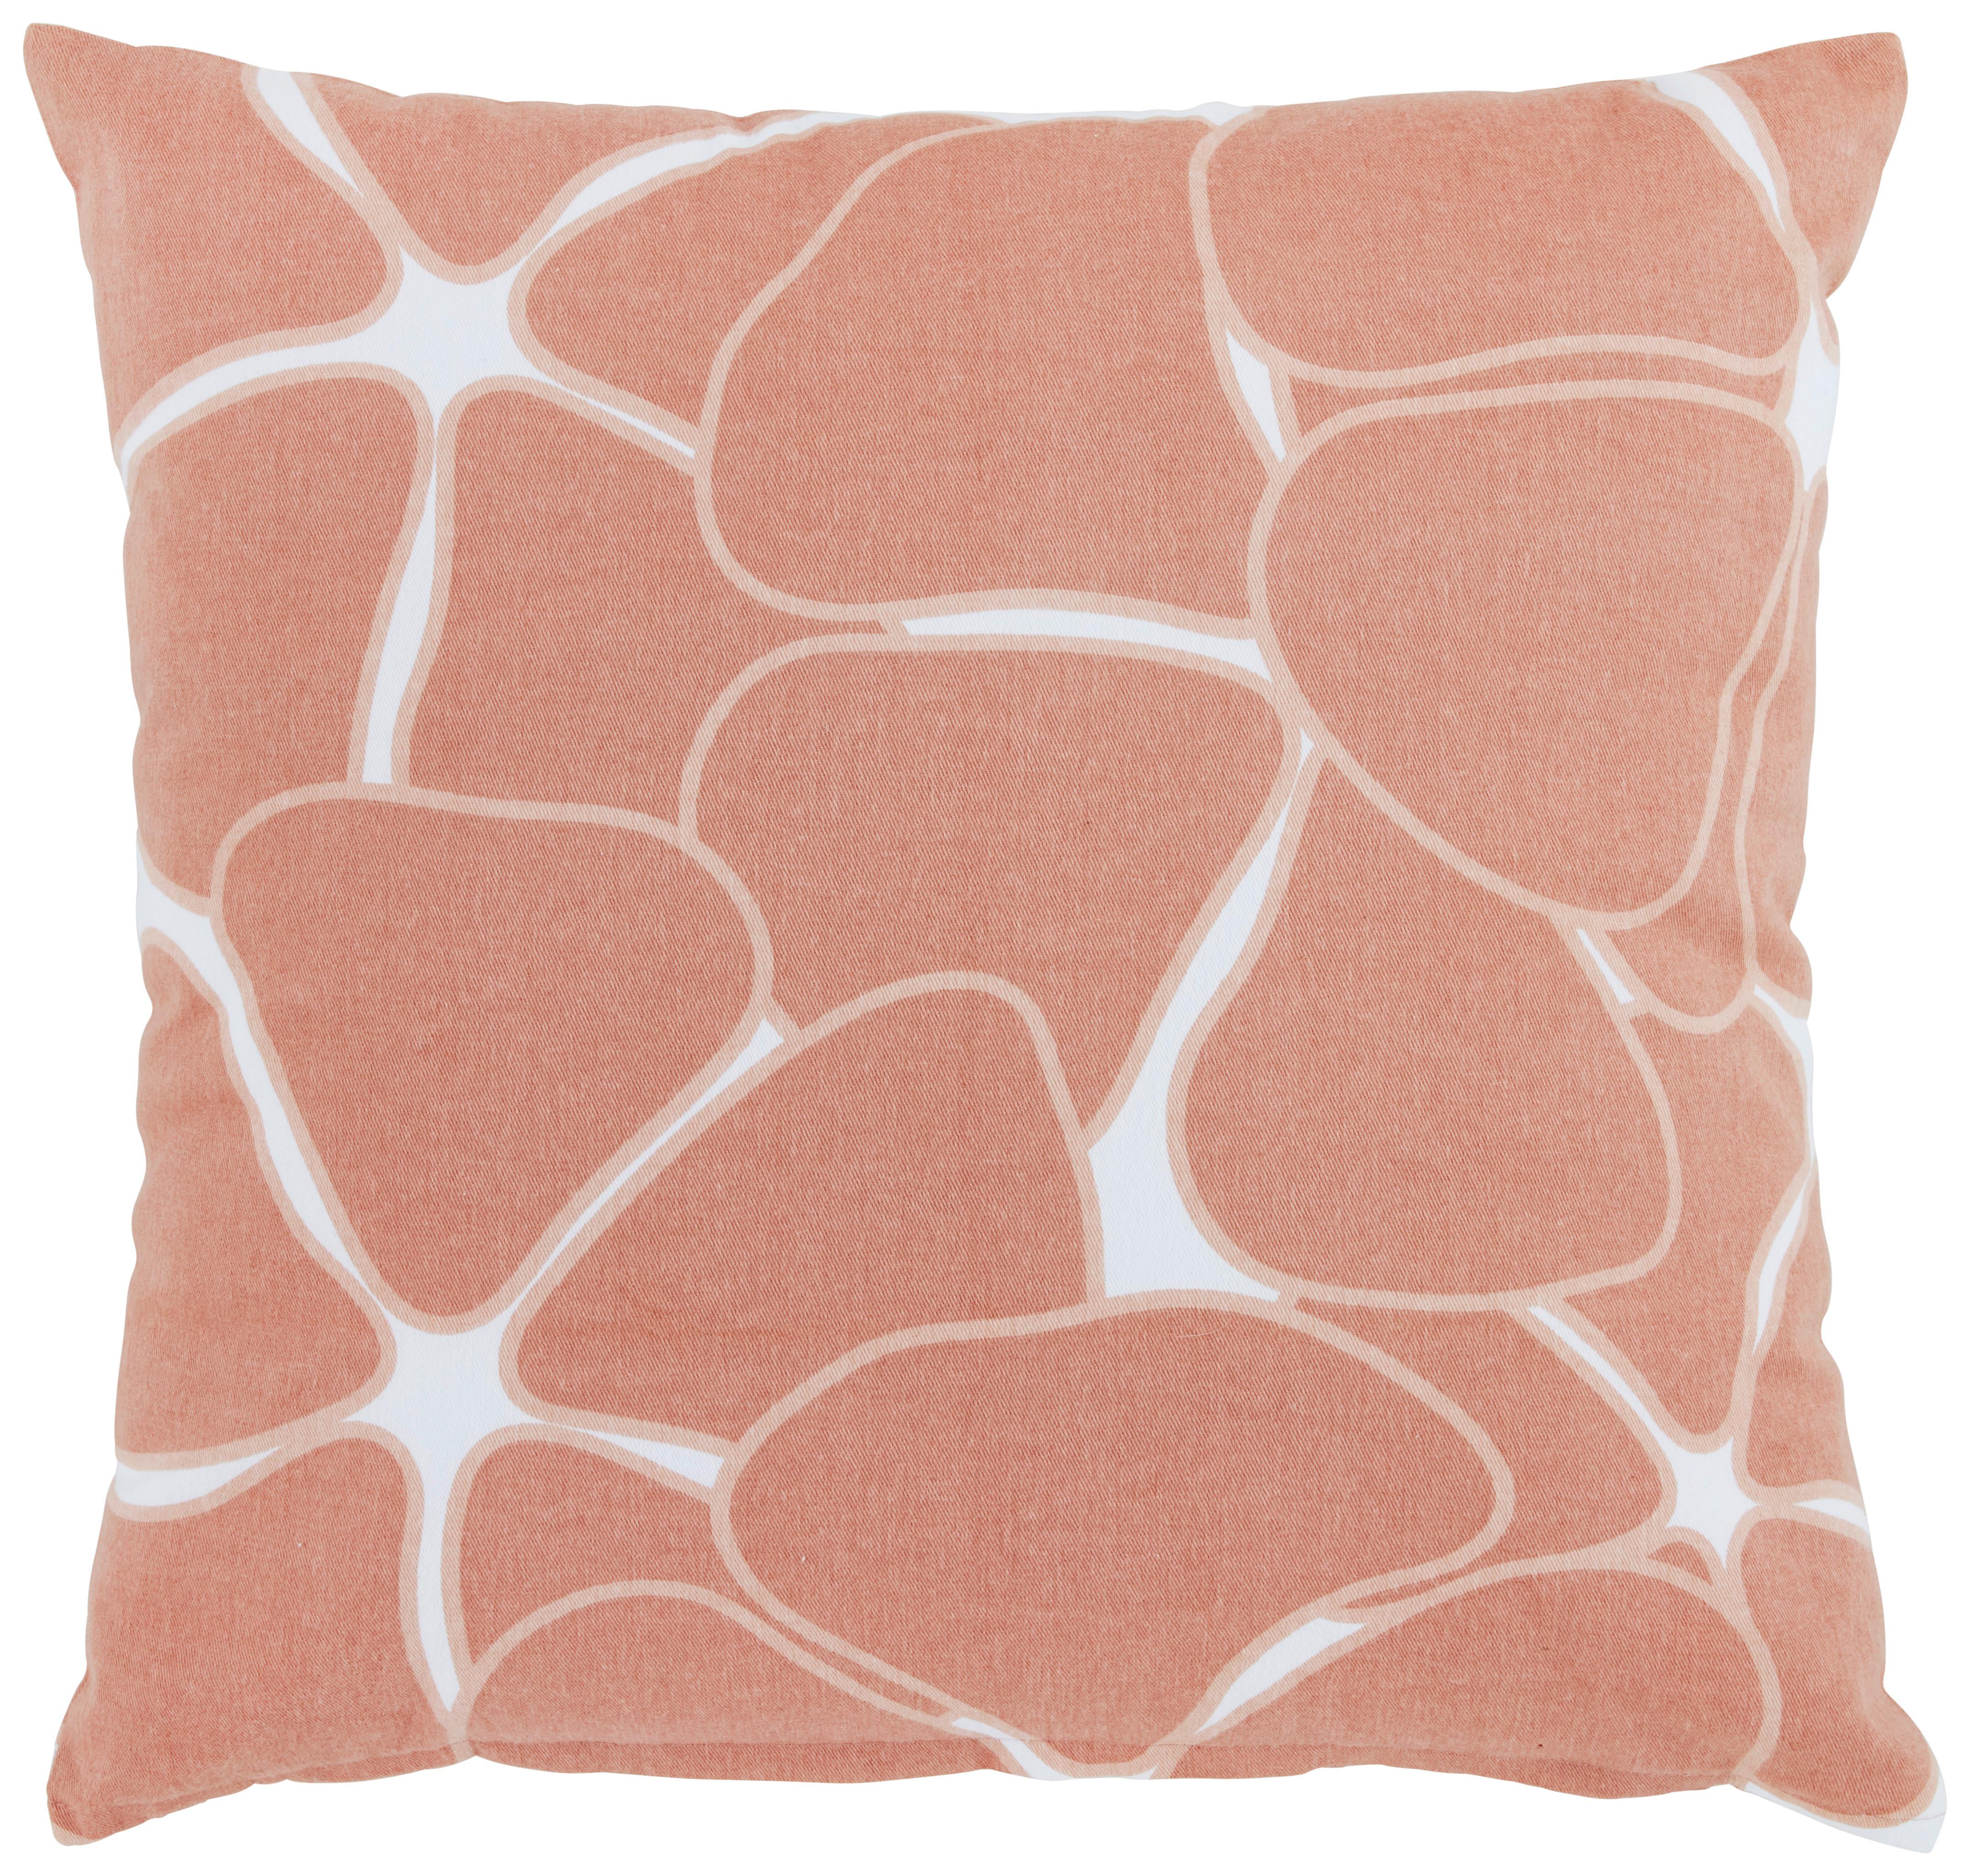 Dekorační Polštář Blooming, 45/45cm, Růžová - pink, Romantický / Rustikální, textil (45/45cm) - Modern Living